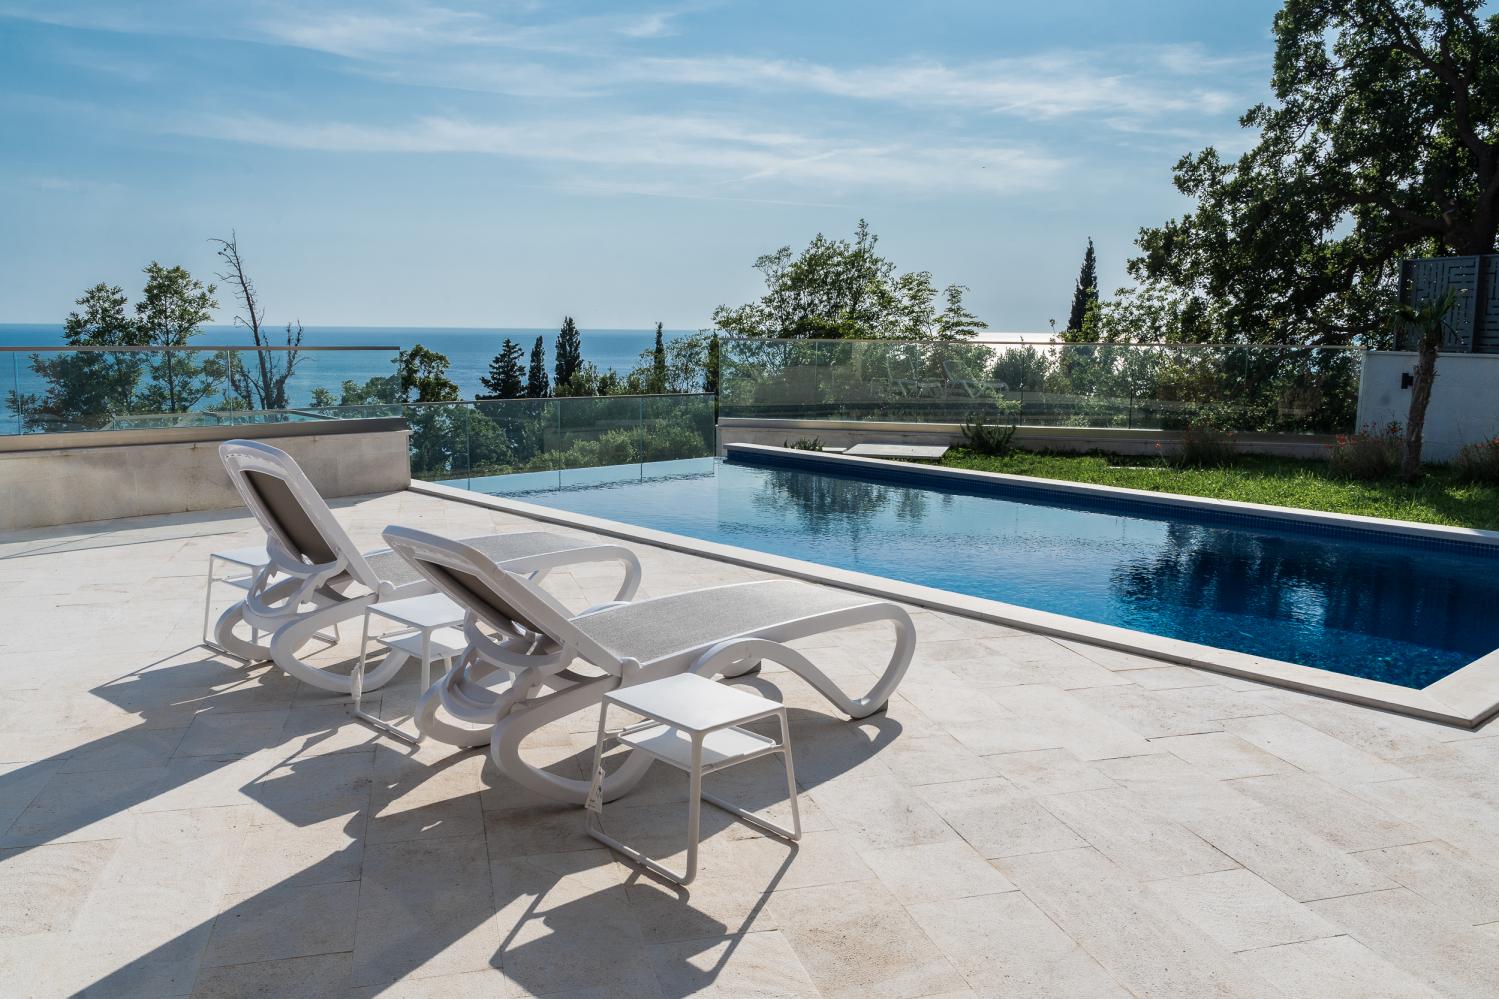 Нова луксузна вила од 346 м2 са погледом на море и базеном у Дробничију, Црна Гора